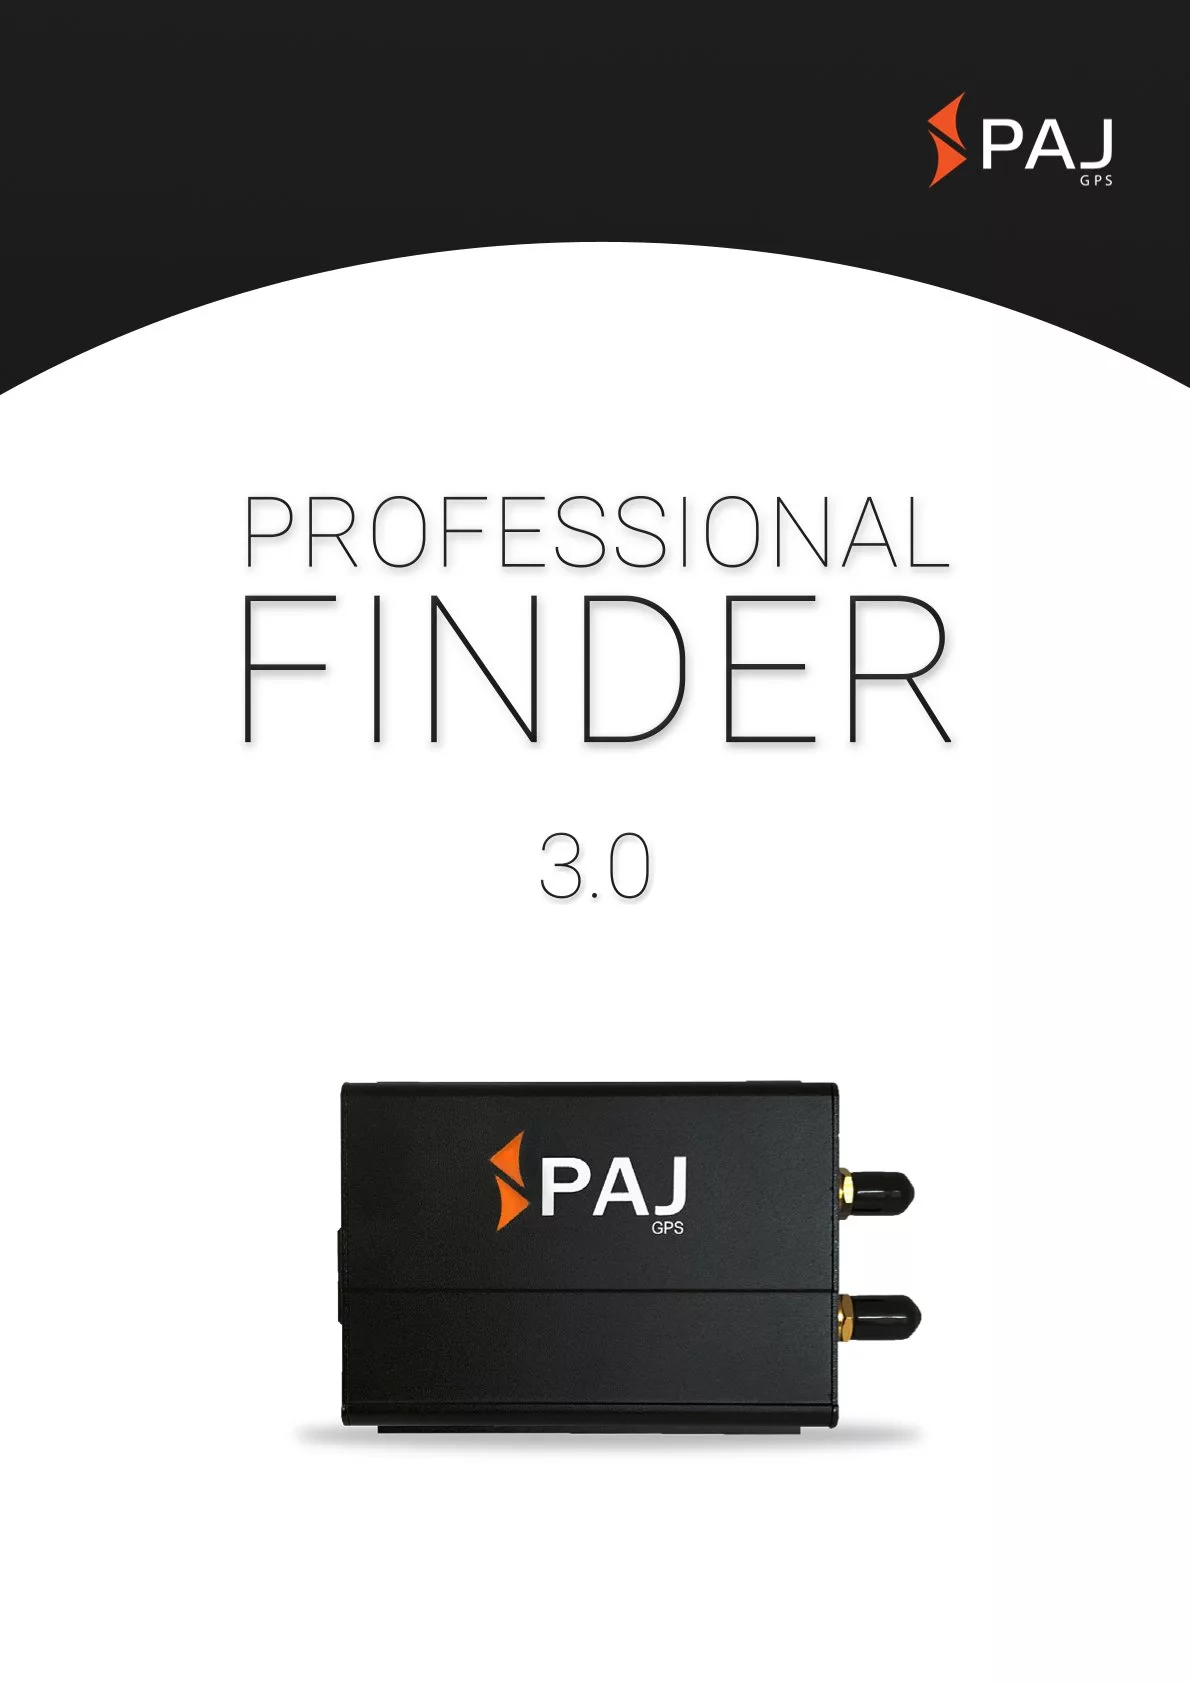 Imagem da capa para folha de dados PROFESSIONAL Finder 3.0